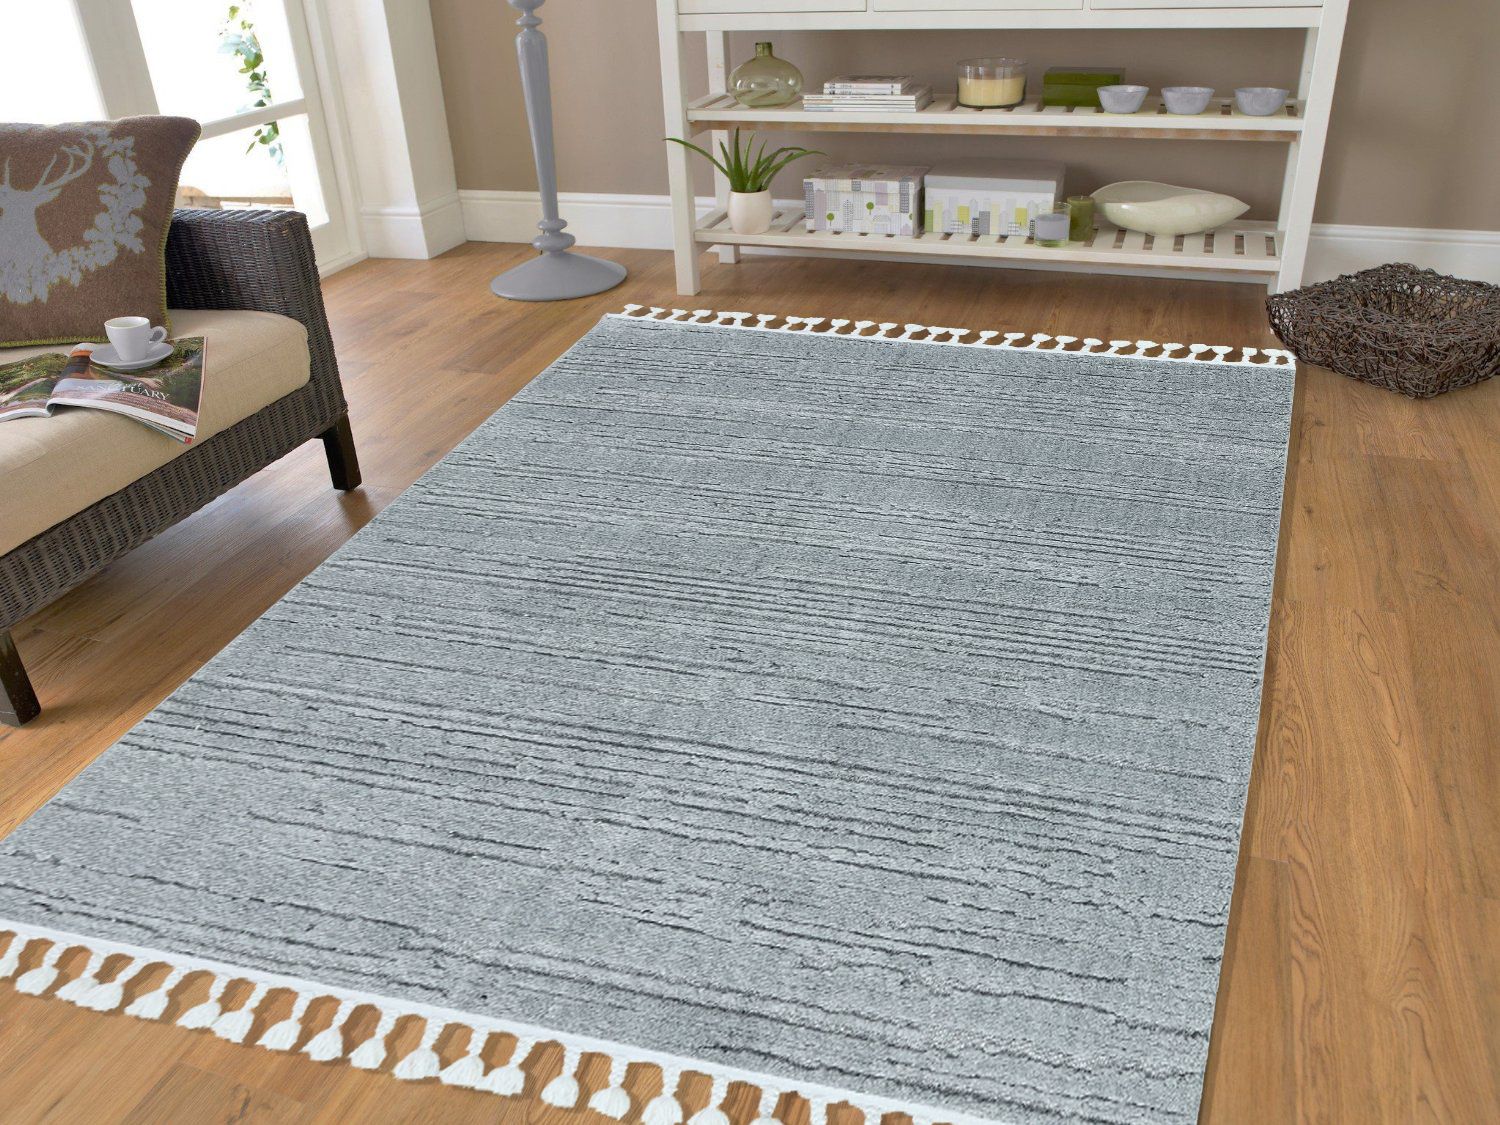 Modne dywany do salonu mogą być jego ozdobą i dopełnieniem aranżacji